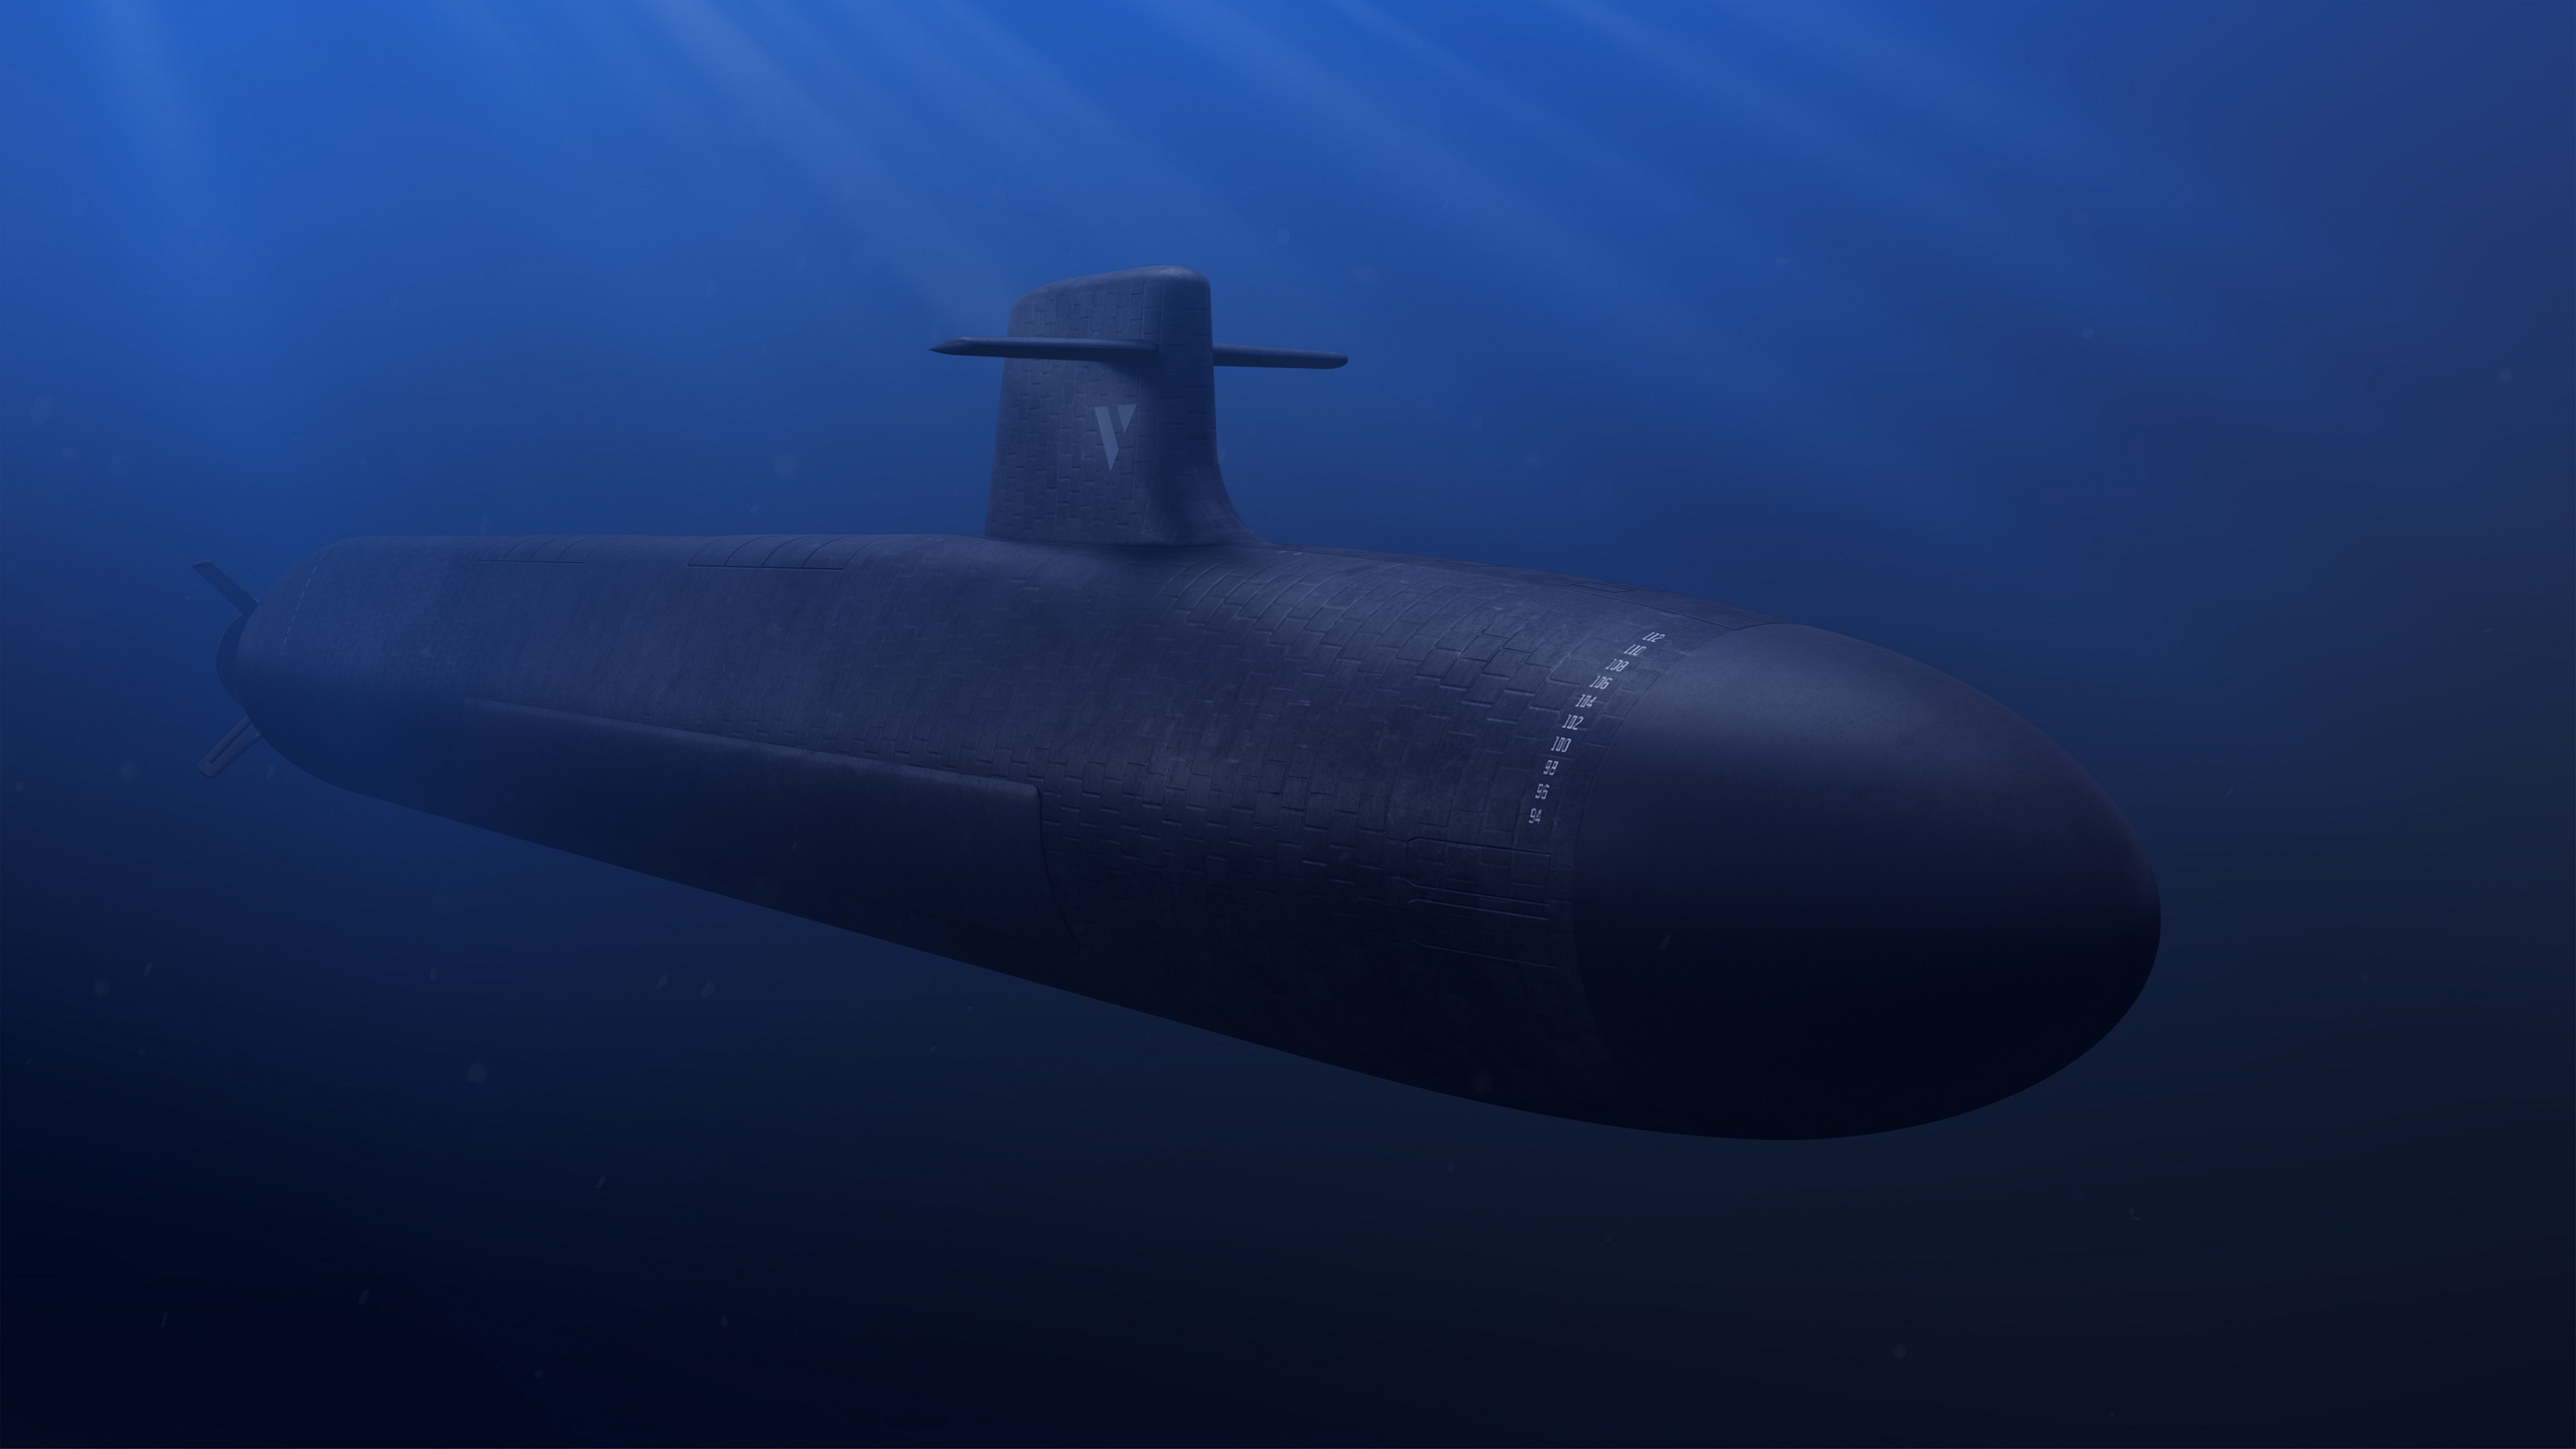 Elysée 2022 : Les sous-marins sont devenus détectables, selon Jean-Luc Mélenchon (LFI)